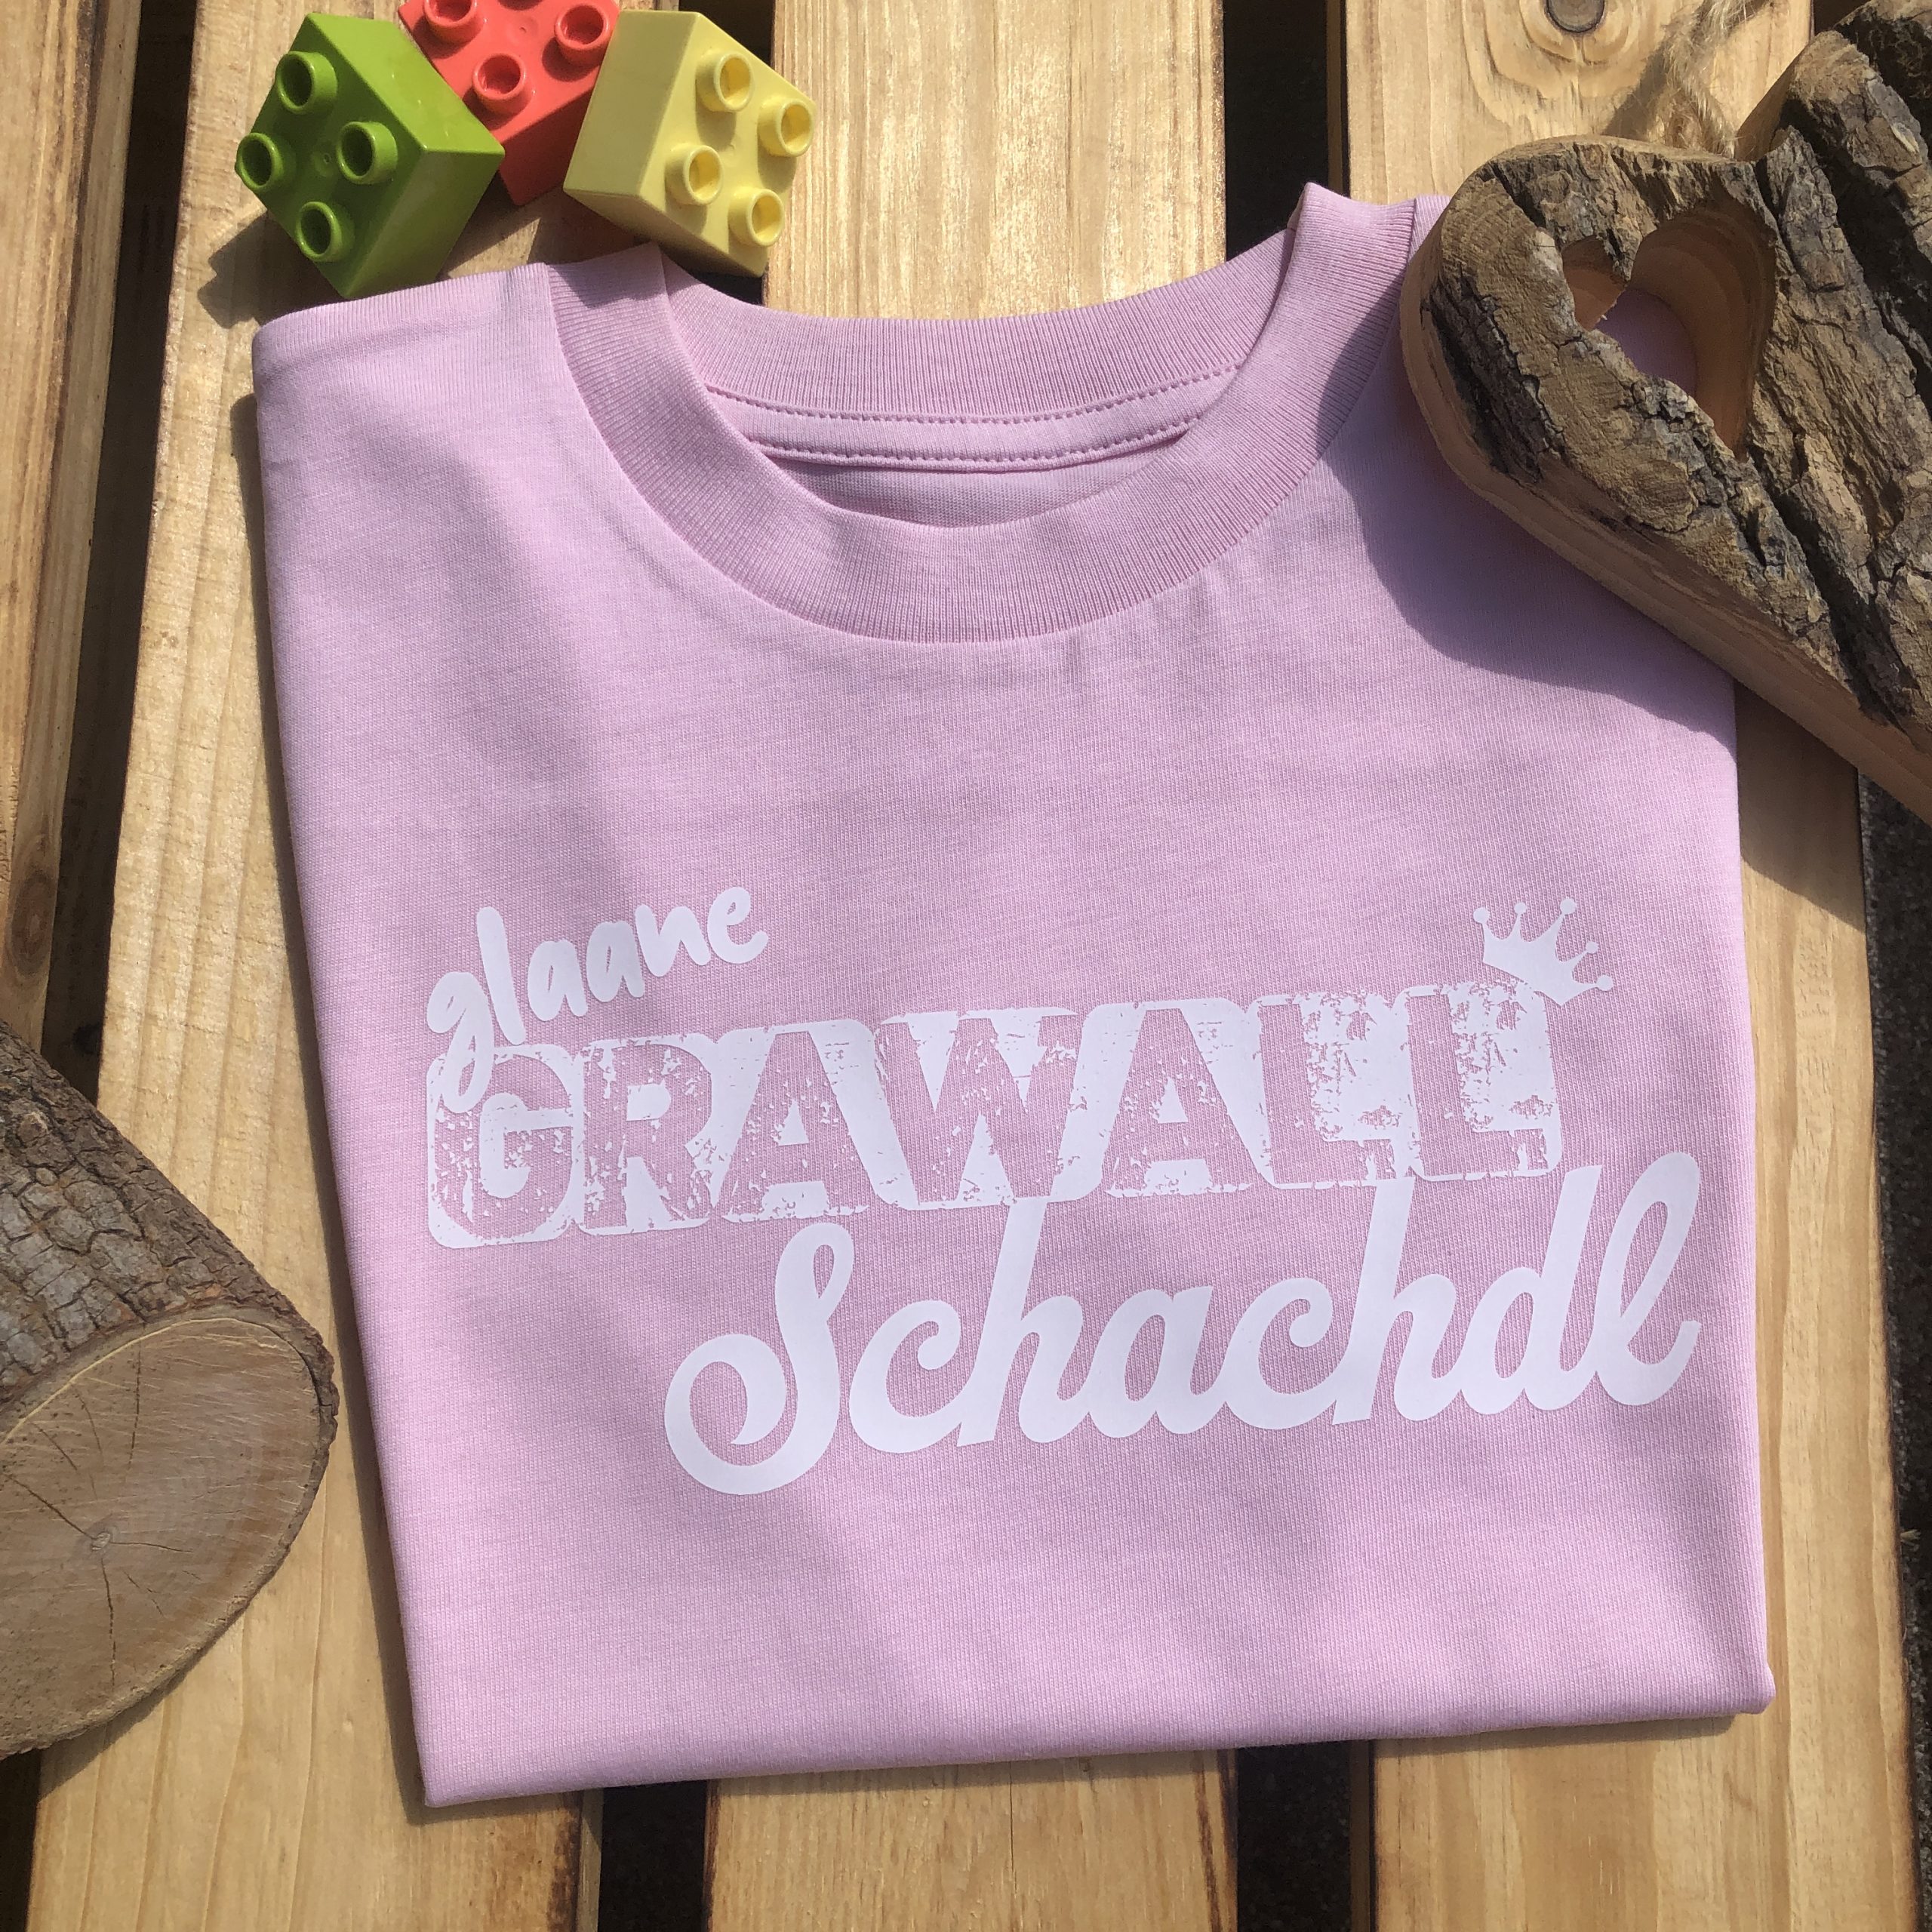 glaane Grawallschachdl Mädchen T-Shirt Frankenstyle Fränkische Mädchenmode